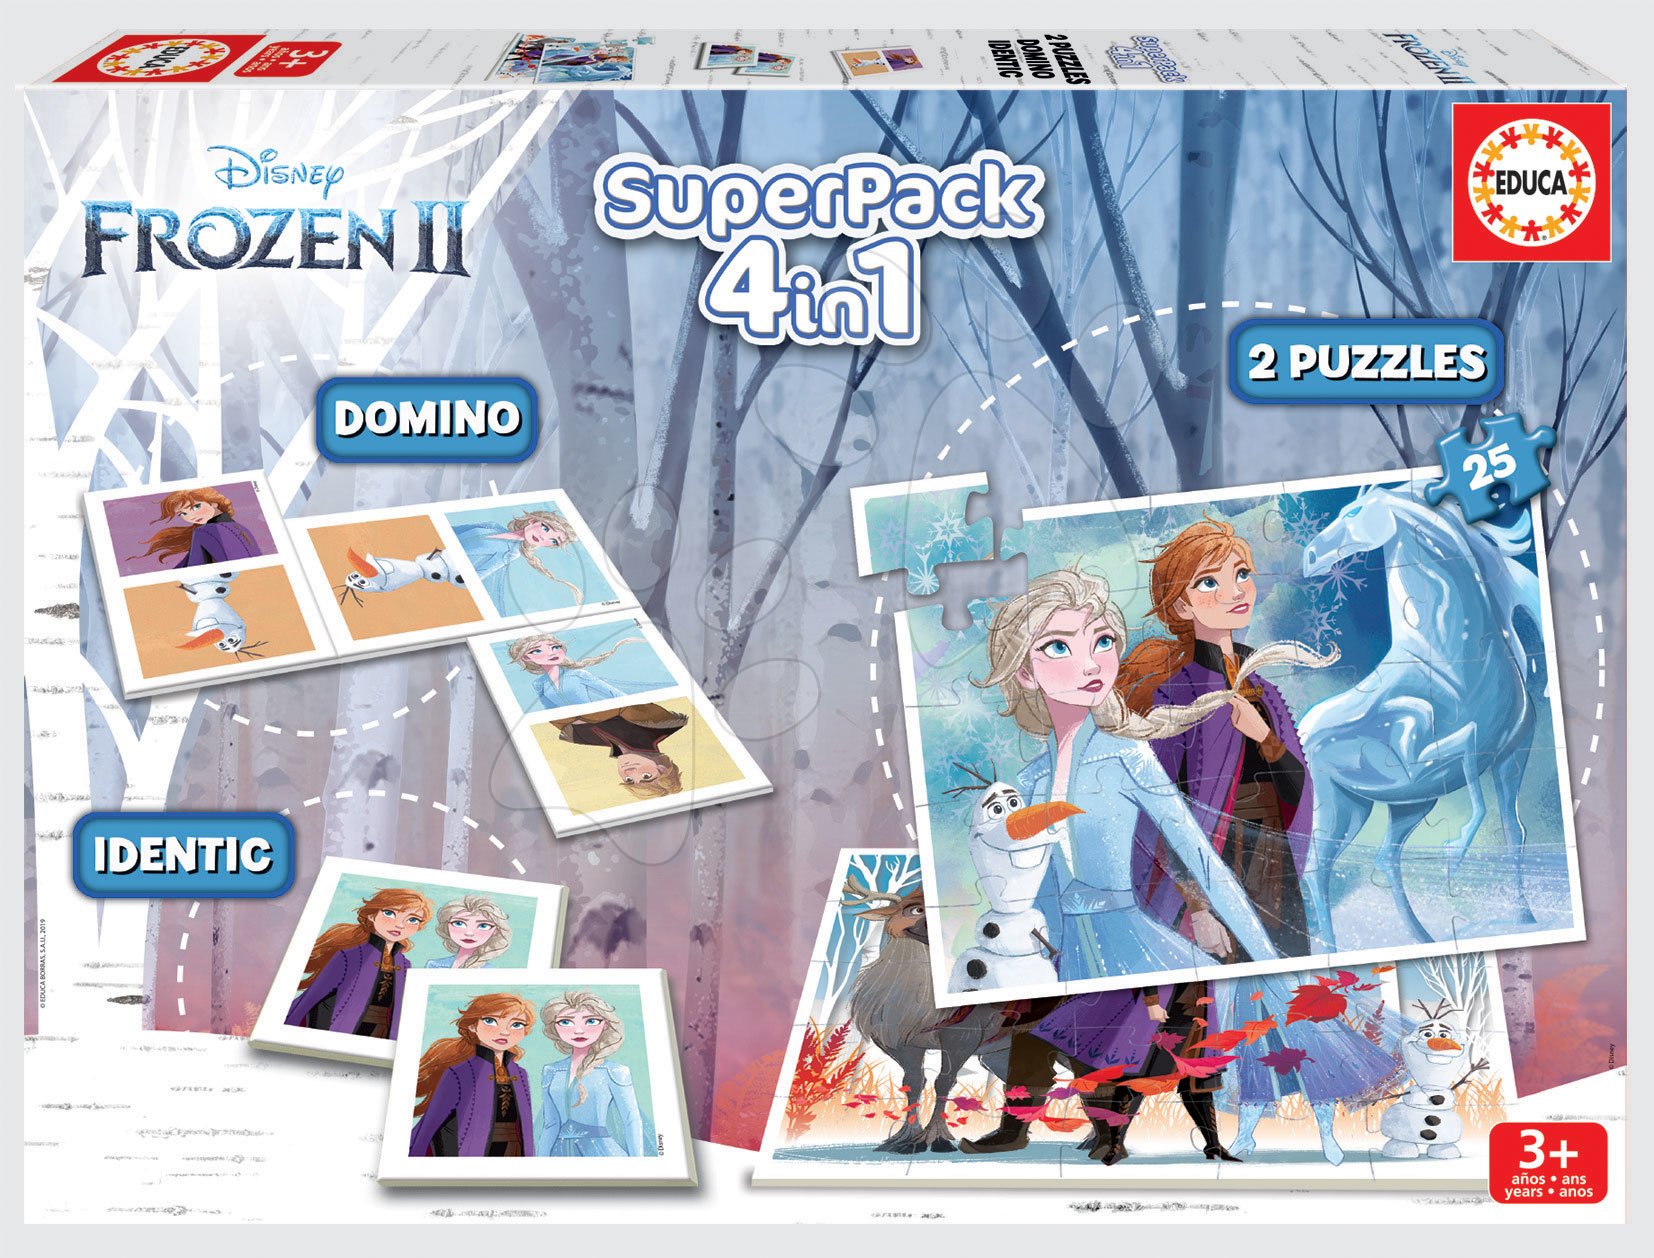 Progresivne dječje puzzle - Superpack 4u1 Frozen 2 Disney Educa puzzle, domino i pexeso